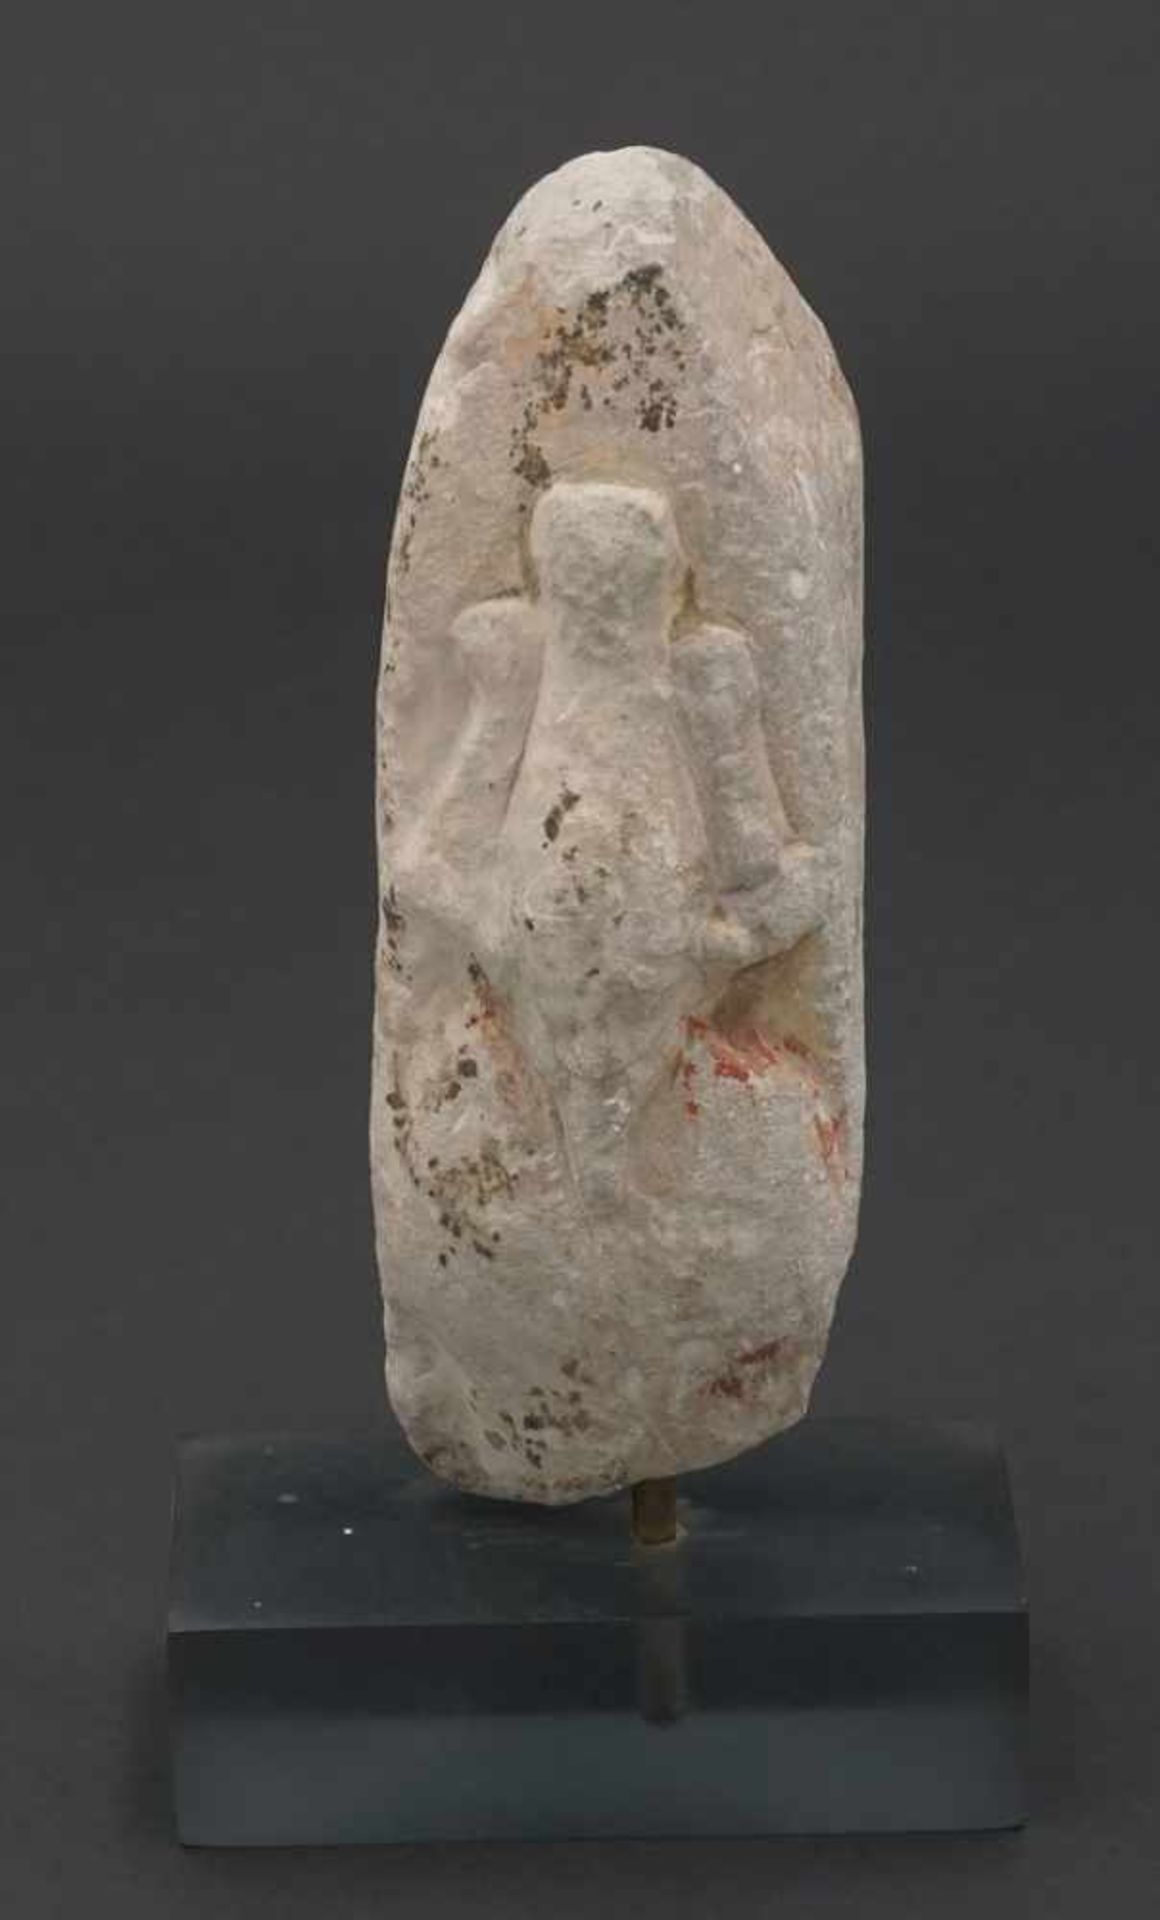 Osiris, Ägypten, Spätzeit, 26.-30. Dynastie, um 630 - 350 v. Chr.Kalkstein, Fragment eines Obelisken